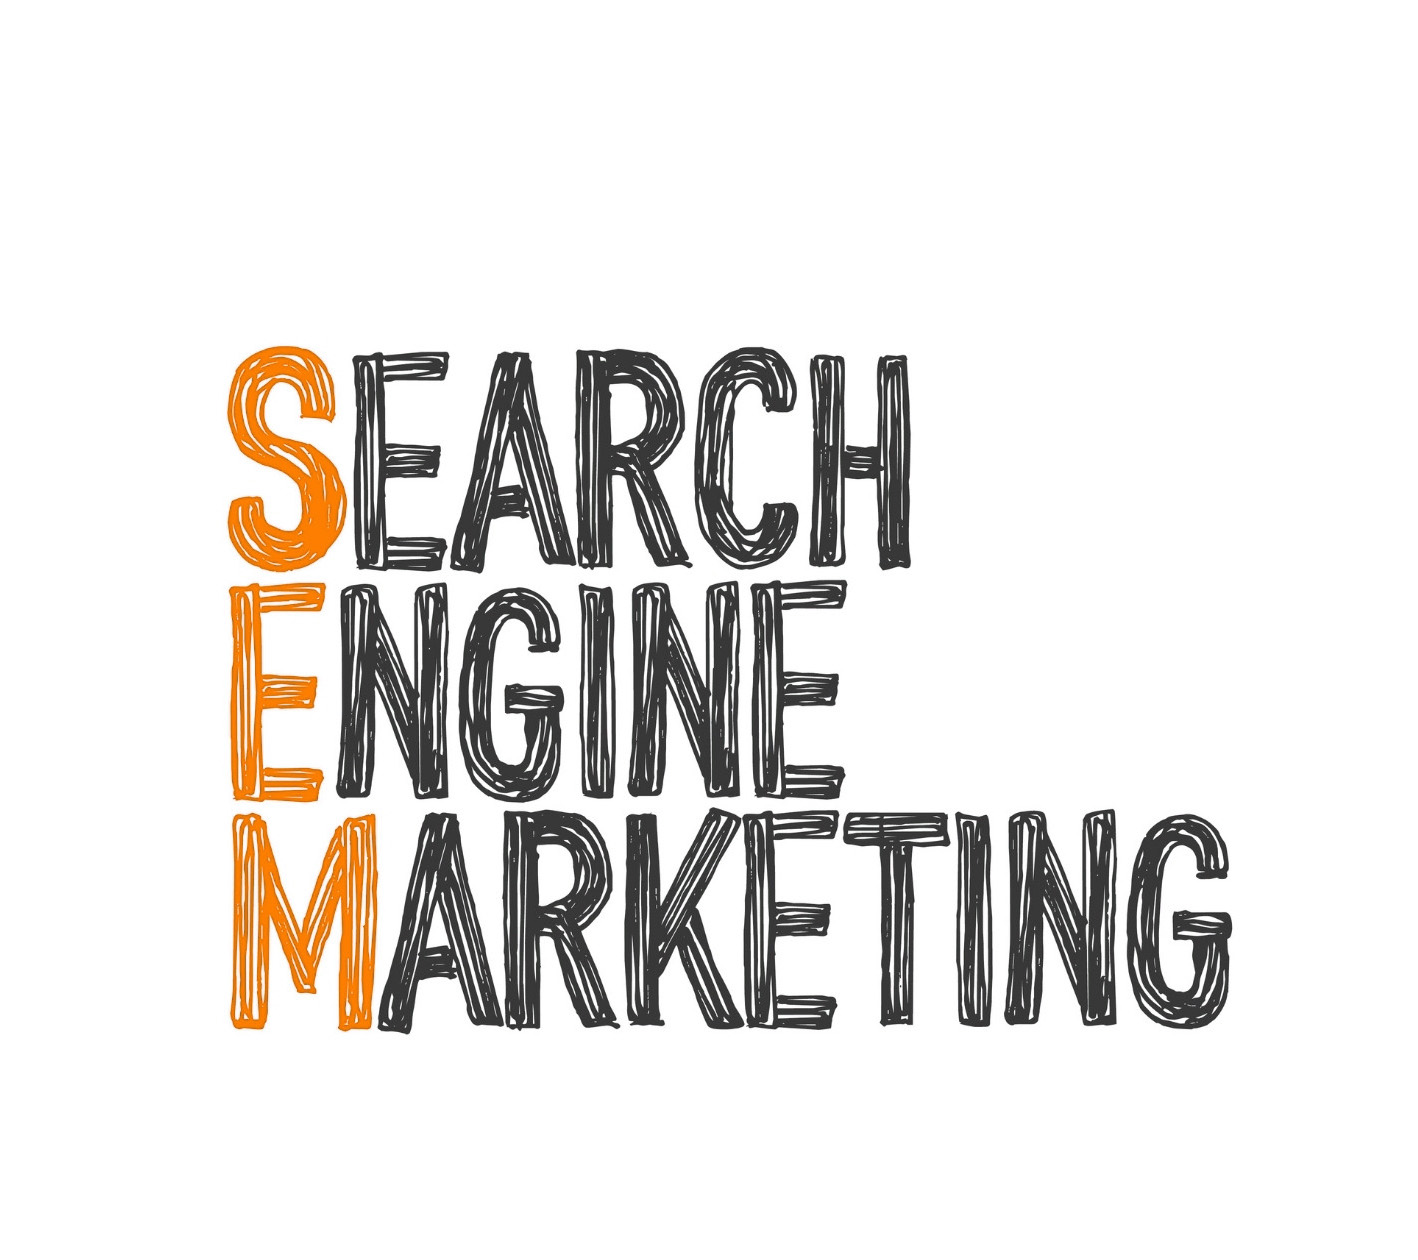 بازاریابی موتورهای جستجو چیست؟